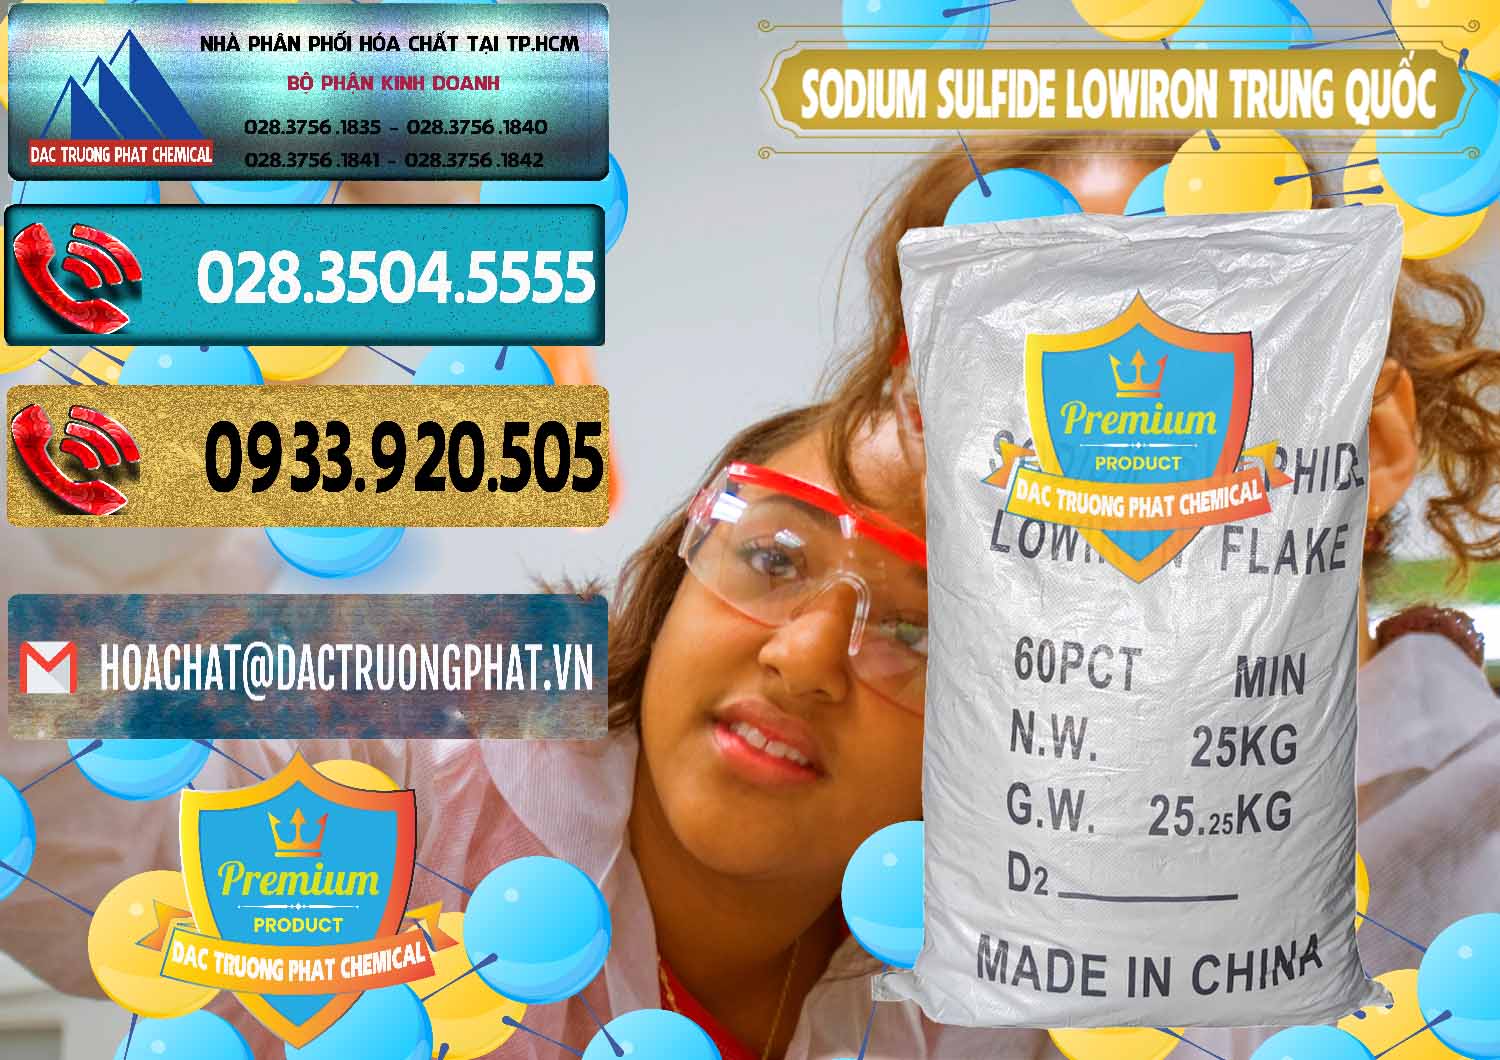 Cty bán và cung ứng Sodium Sulfide NA2S – Đá Thối Lowiron Trung Quốc China - 0227 - Nơi bán _ cung cấp hóa chất tại TP.HCM - hoachatdetnhuom.com